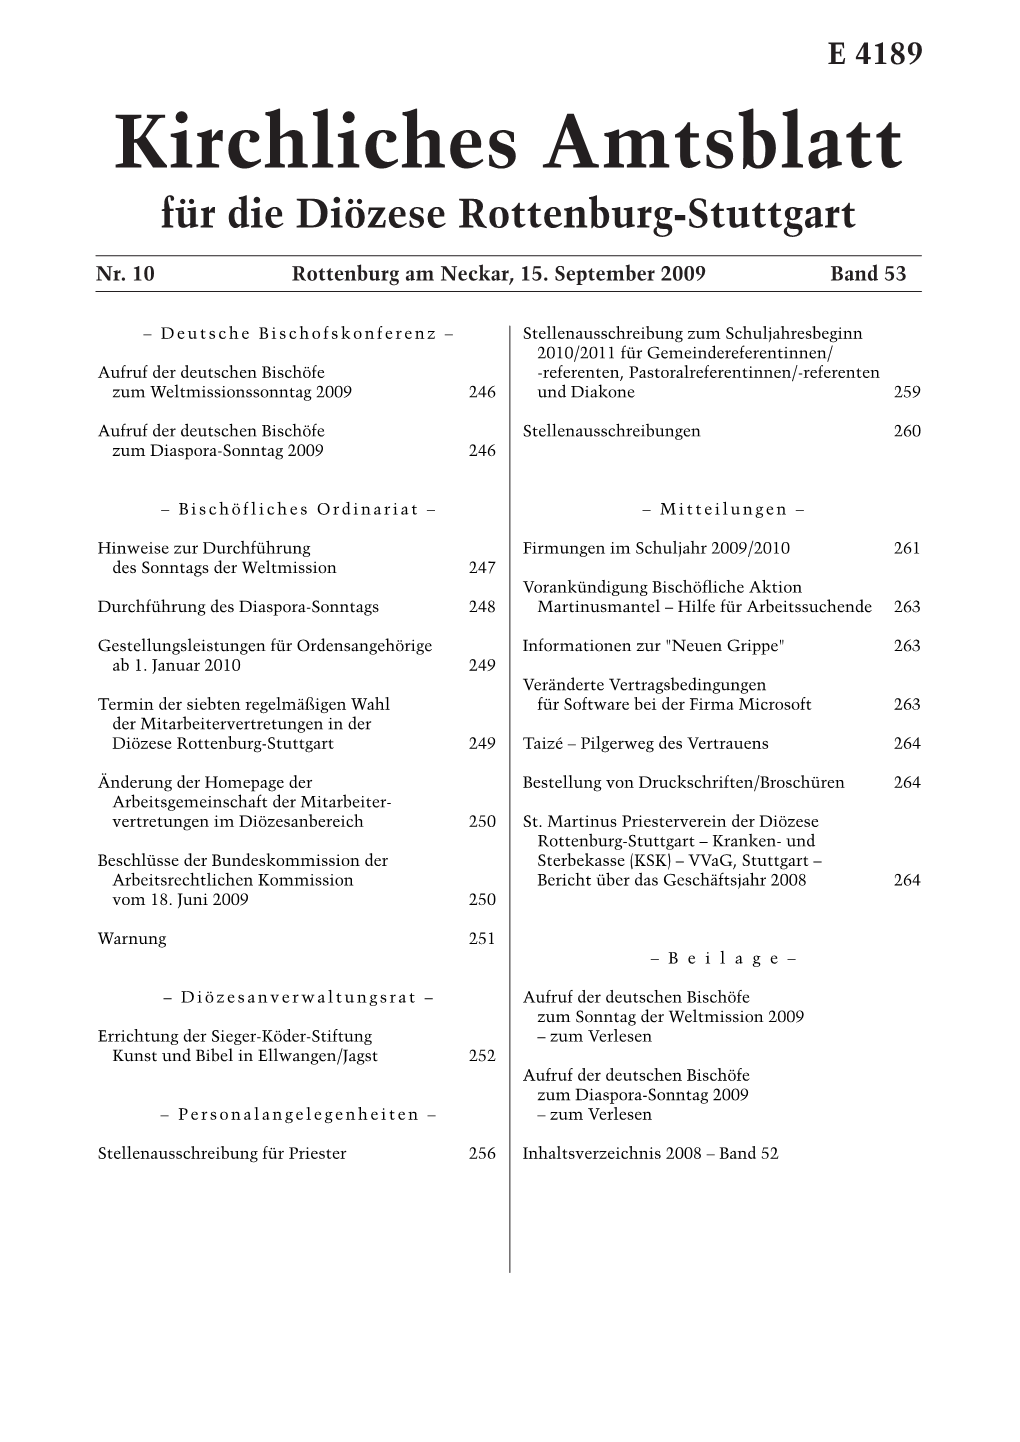 Kirchliches Amtsblatt Für Die Diözese Rottenburg-Stuttgart